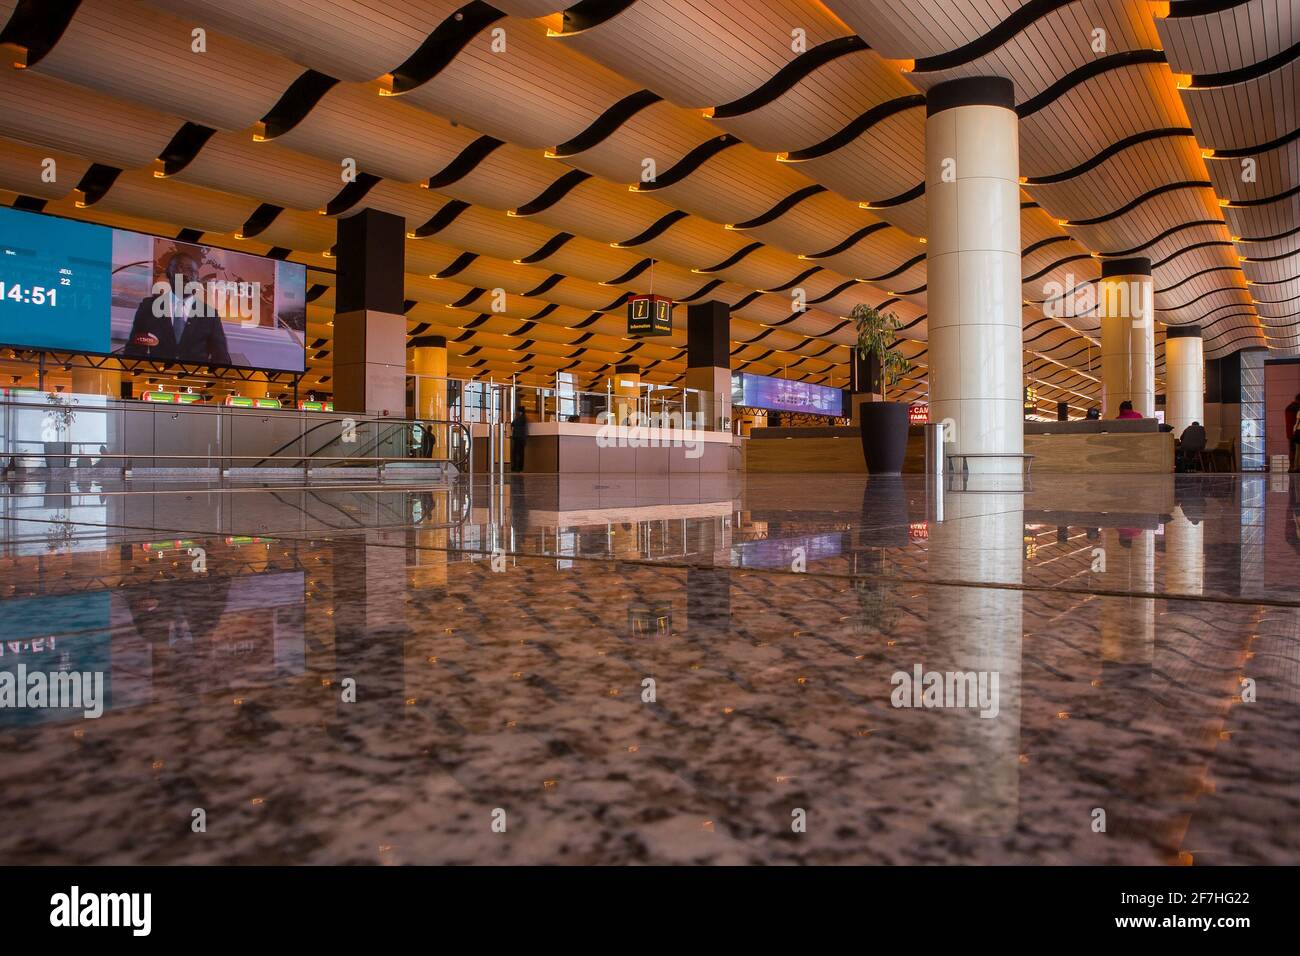 DAKAR, SENEGAL, 22 2018 FEBBRAIO: Sala partenze del nuovo aeroporto Blaise Diagne di Dakar. Interni realizzati con pavimento in marmo, colonne e tetto ondulato. Alcuni Foto Stock